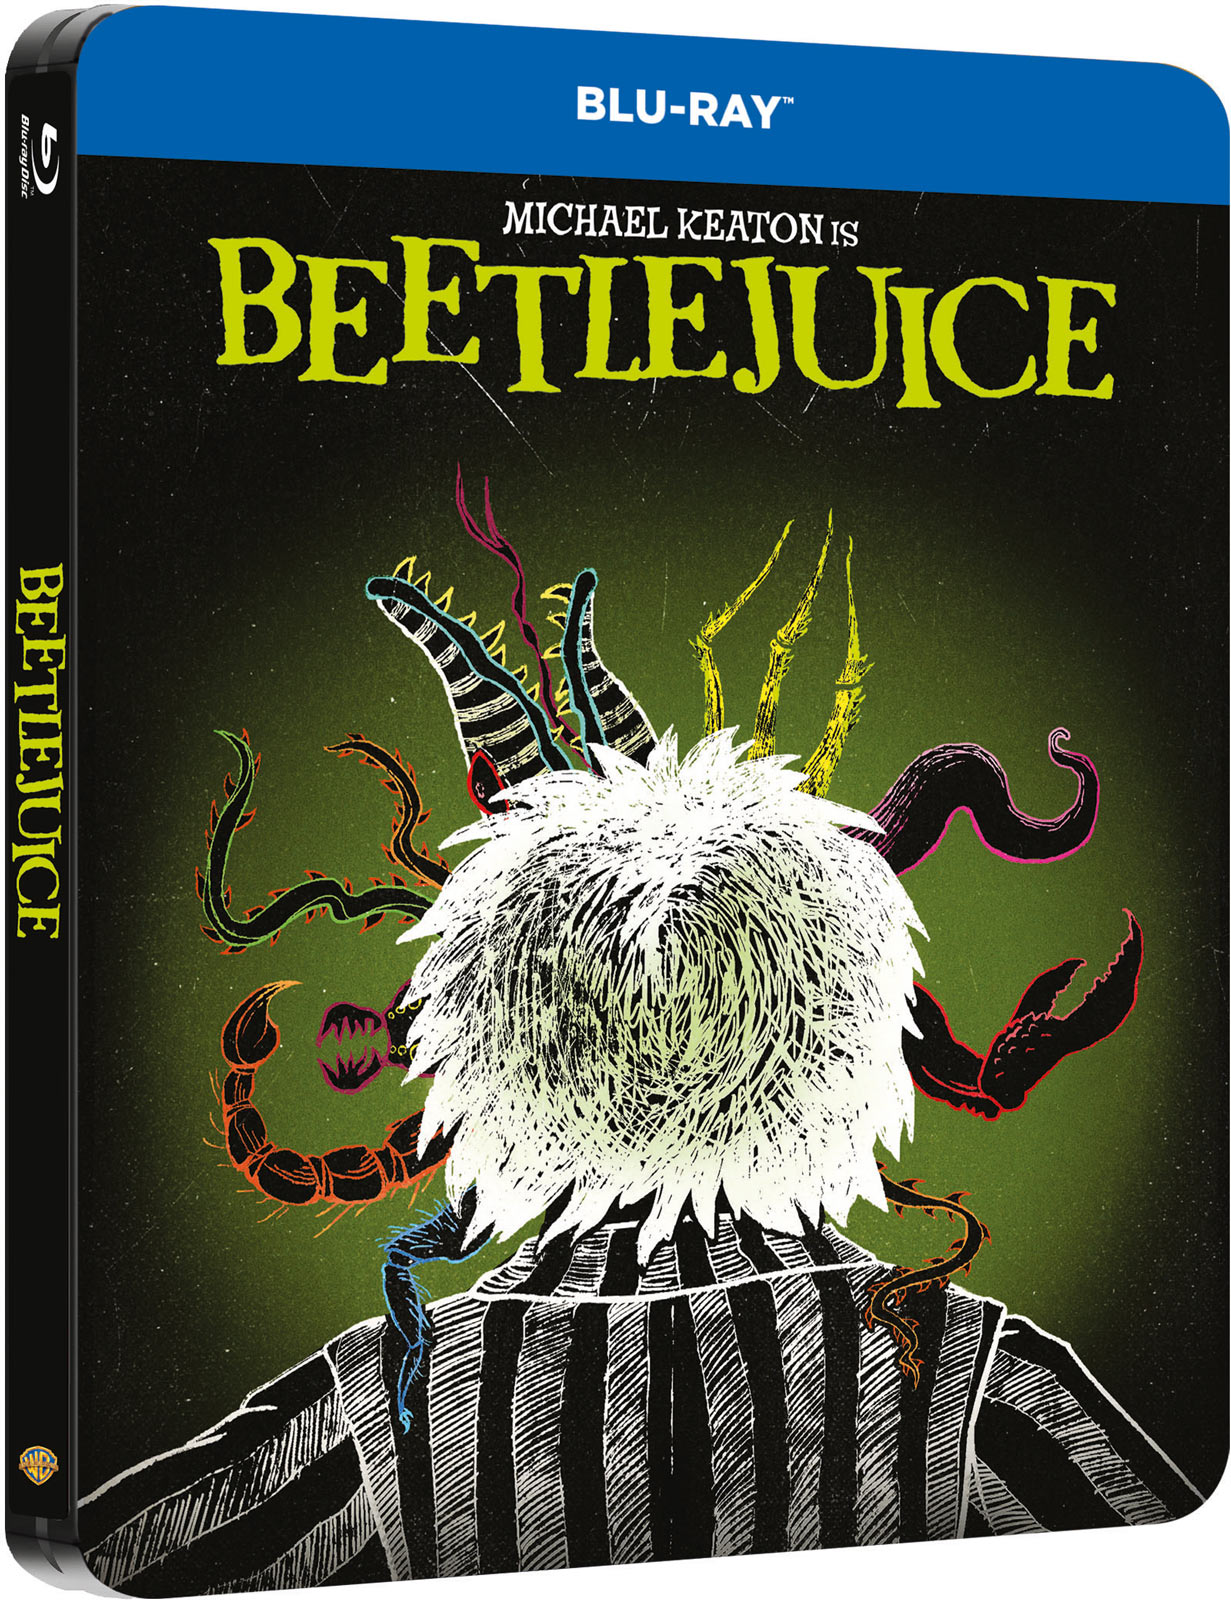 Beetlejuice - SteelBook - Blu-ray